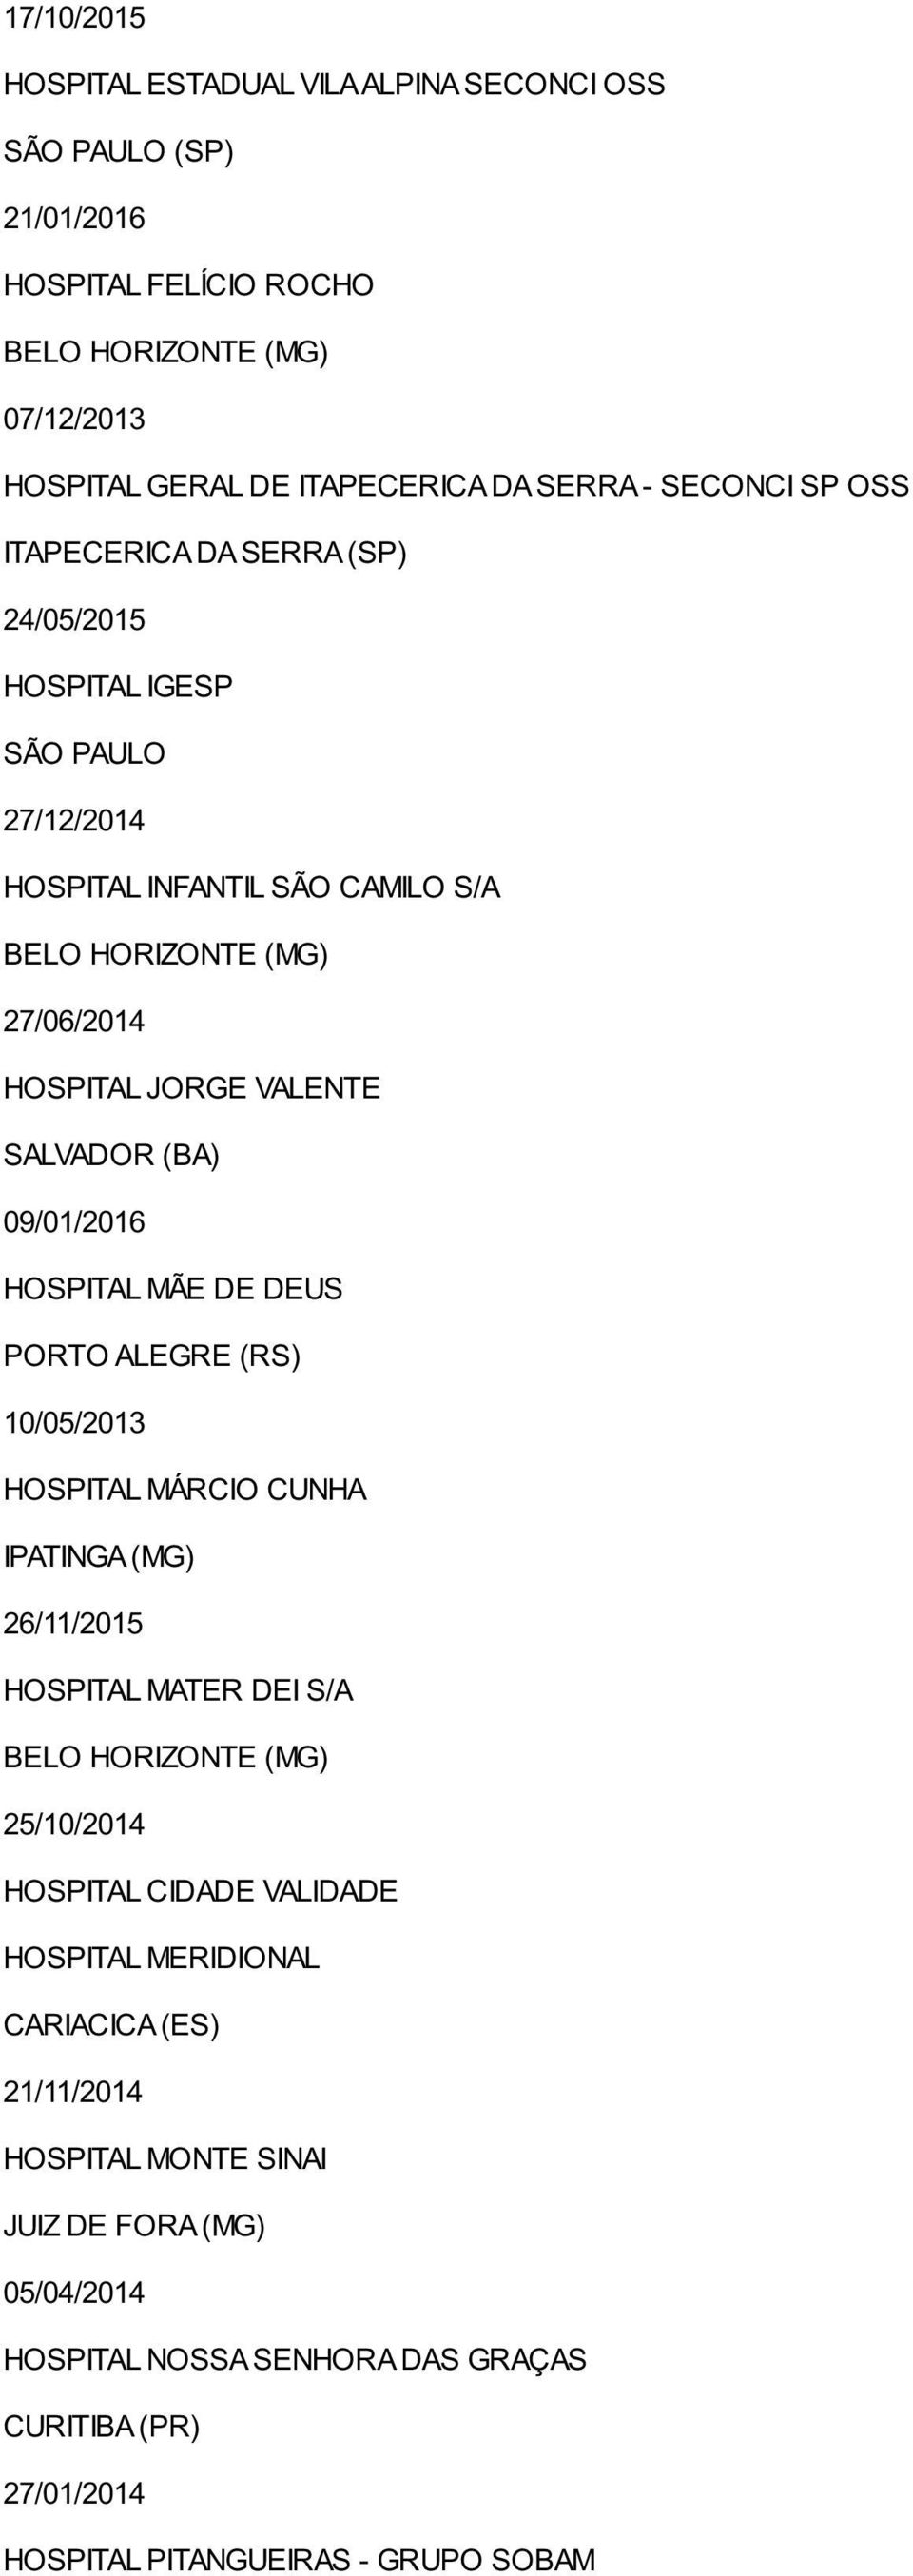 MÃE DE DEUS PORTO ALEGRE (RS) 10/05/2013 HOSPITAL MÁRCIO CUNHA IPATINGA (MG) 26/11/2015 HOSPITAL MATER DEI S/A 25/10/2014 HOSPITAL CIDADE VALIDADE HOSPITAL